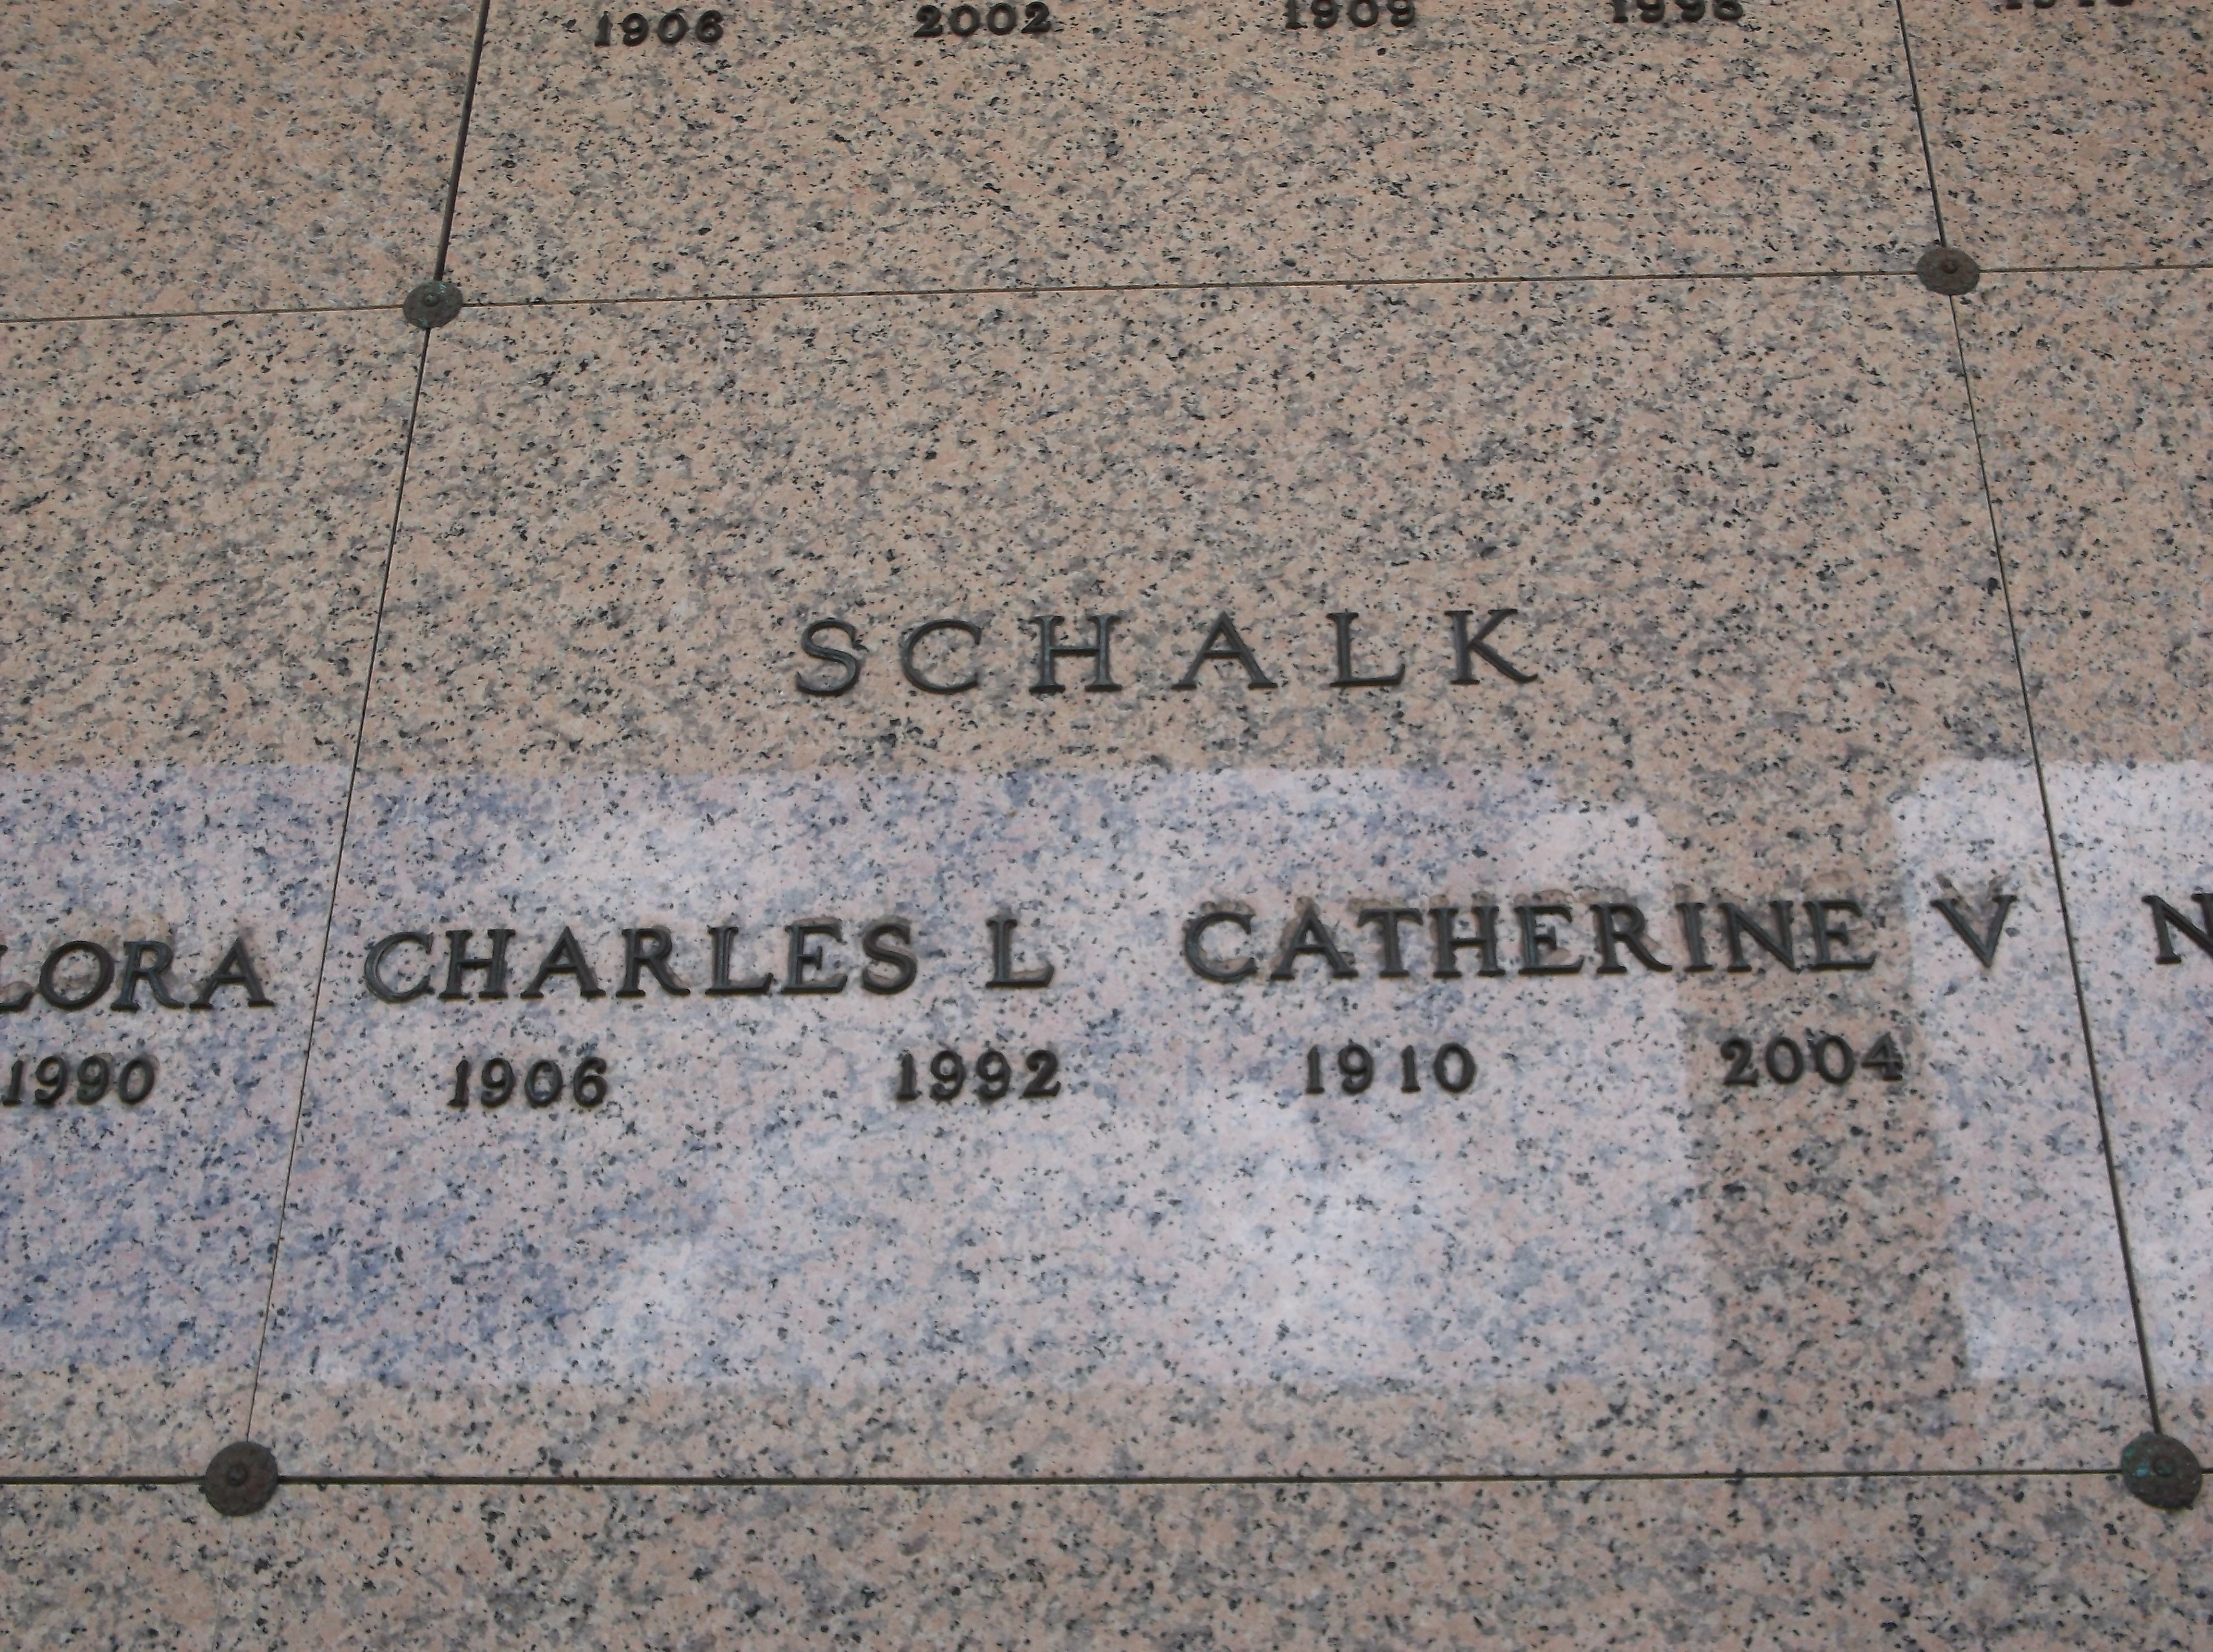 Catherine V Schalk